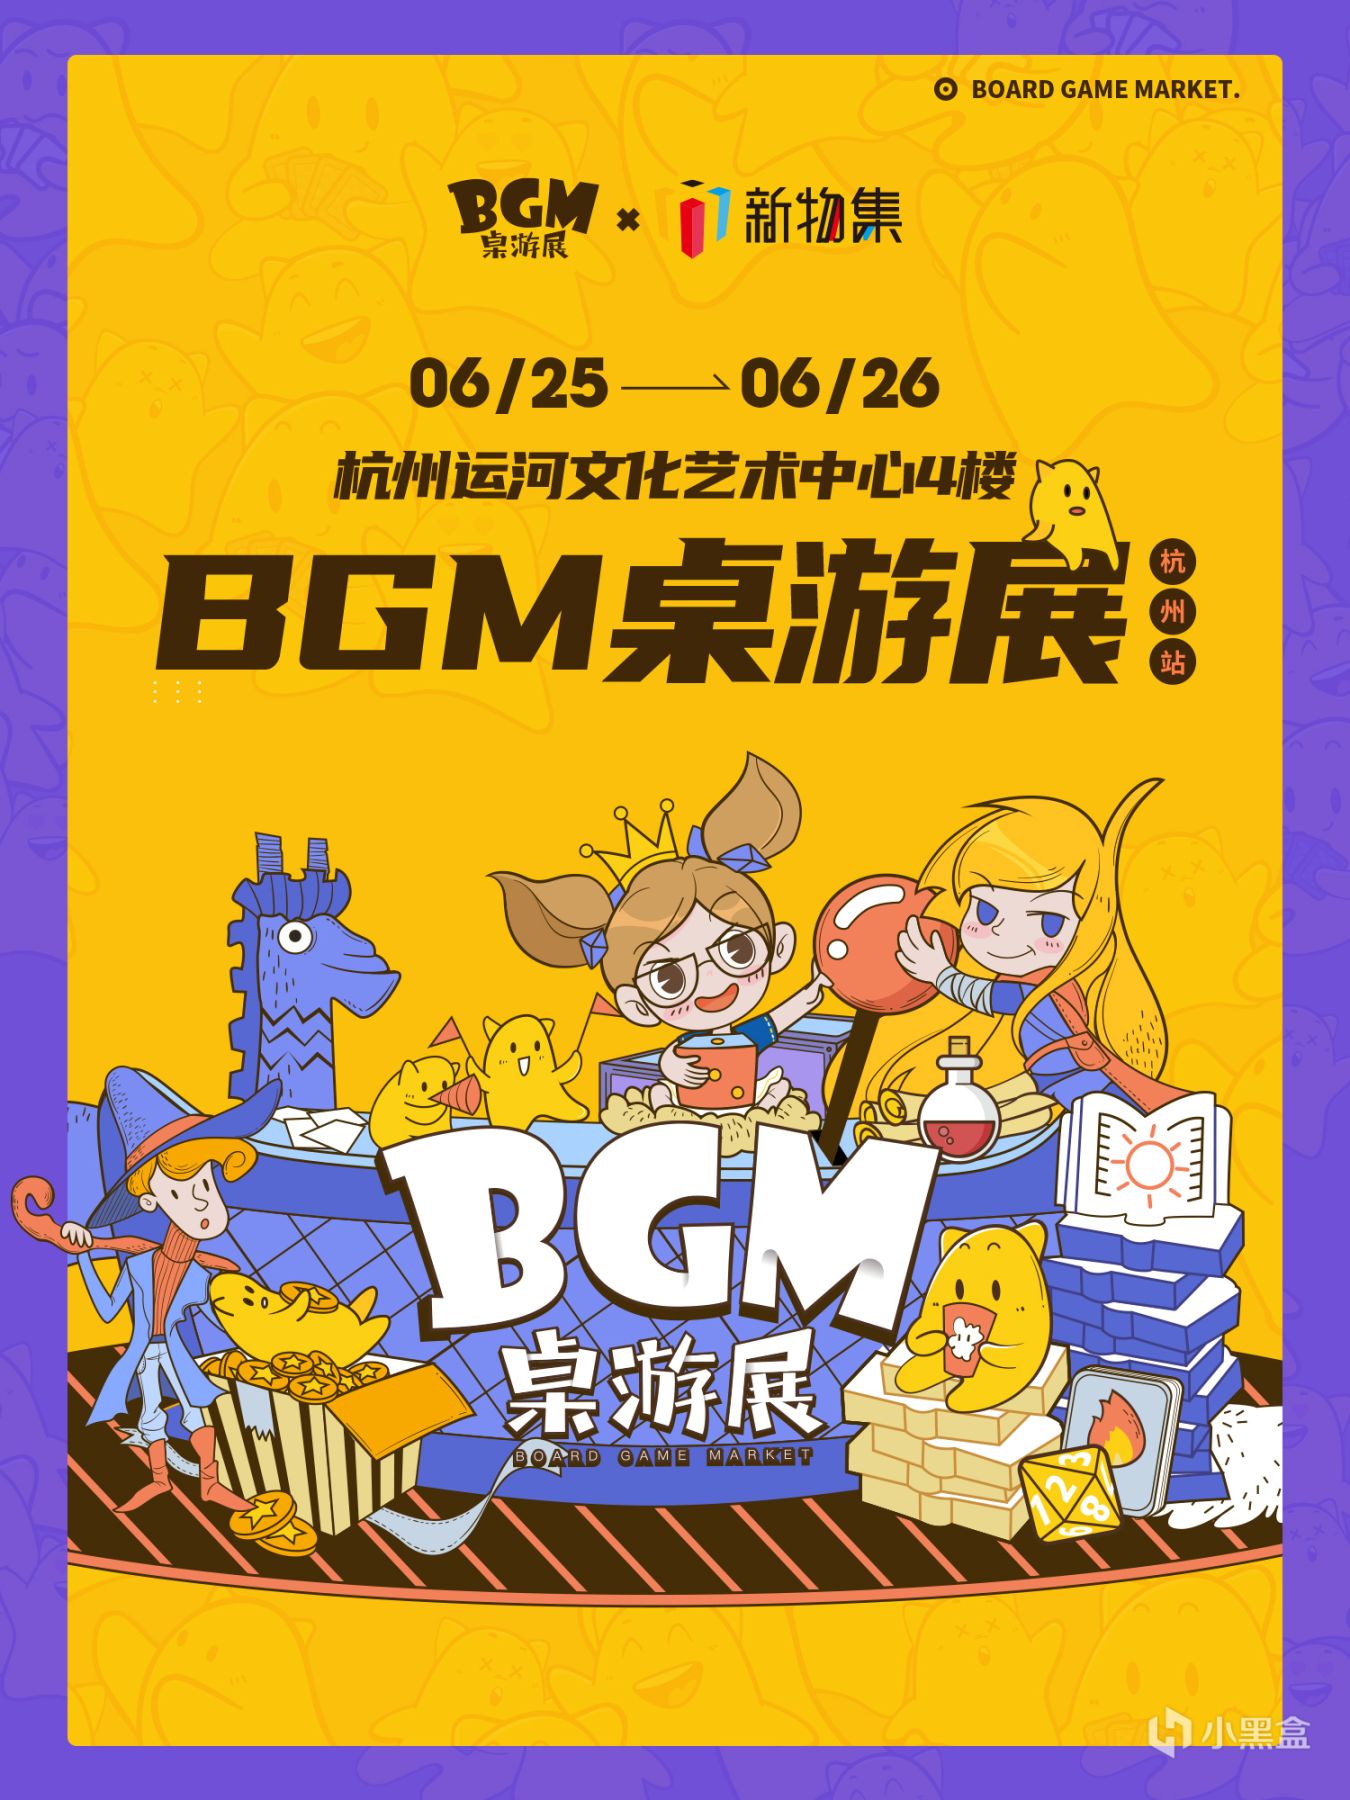 【桌遊綜合】BGM桌遊展-杭州站 即將開票！數量有限，快來搶票吧！-第0張